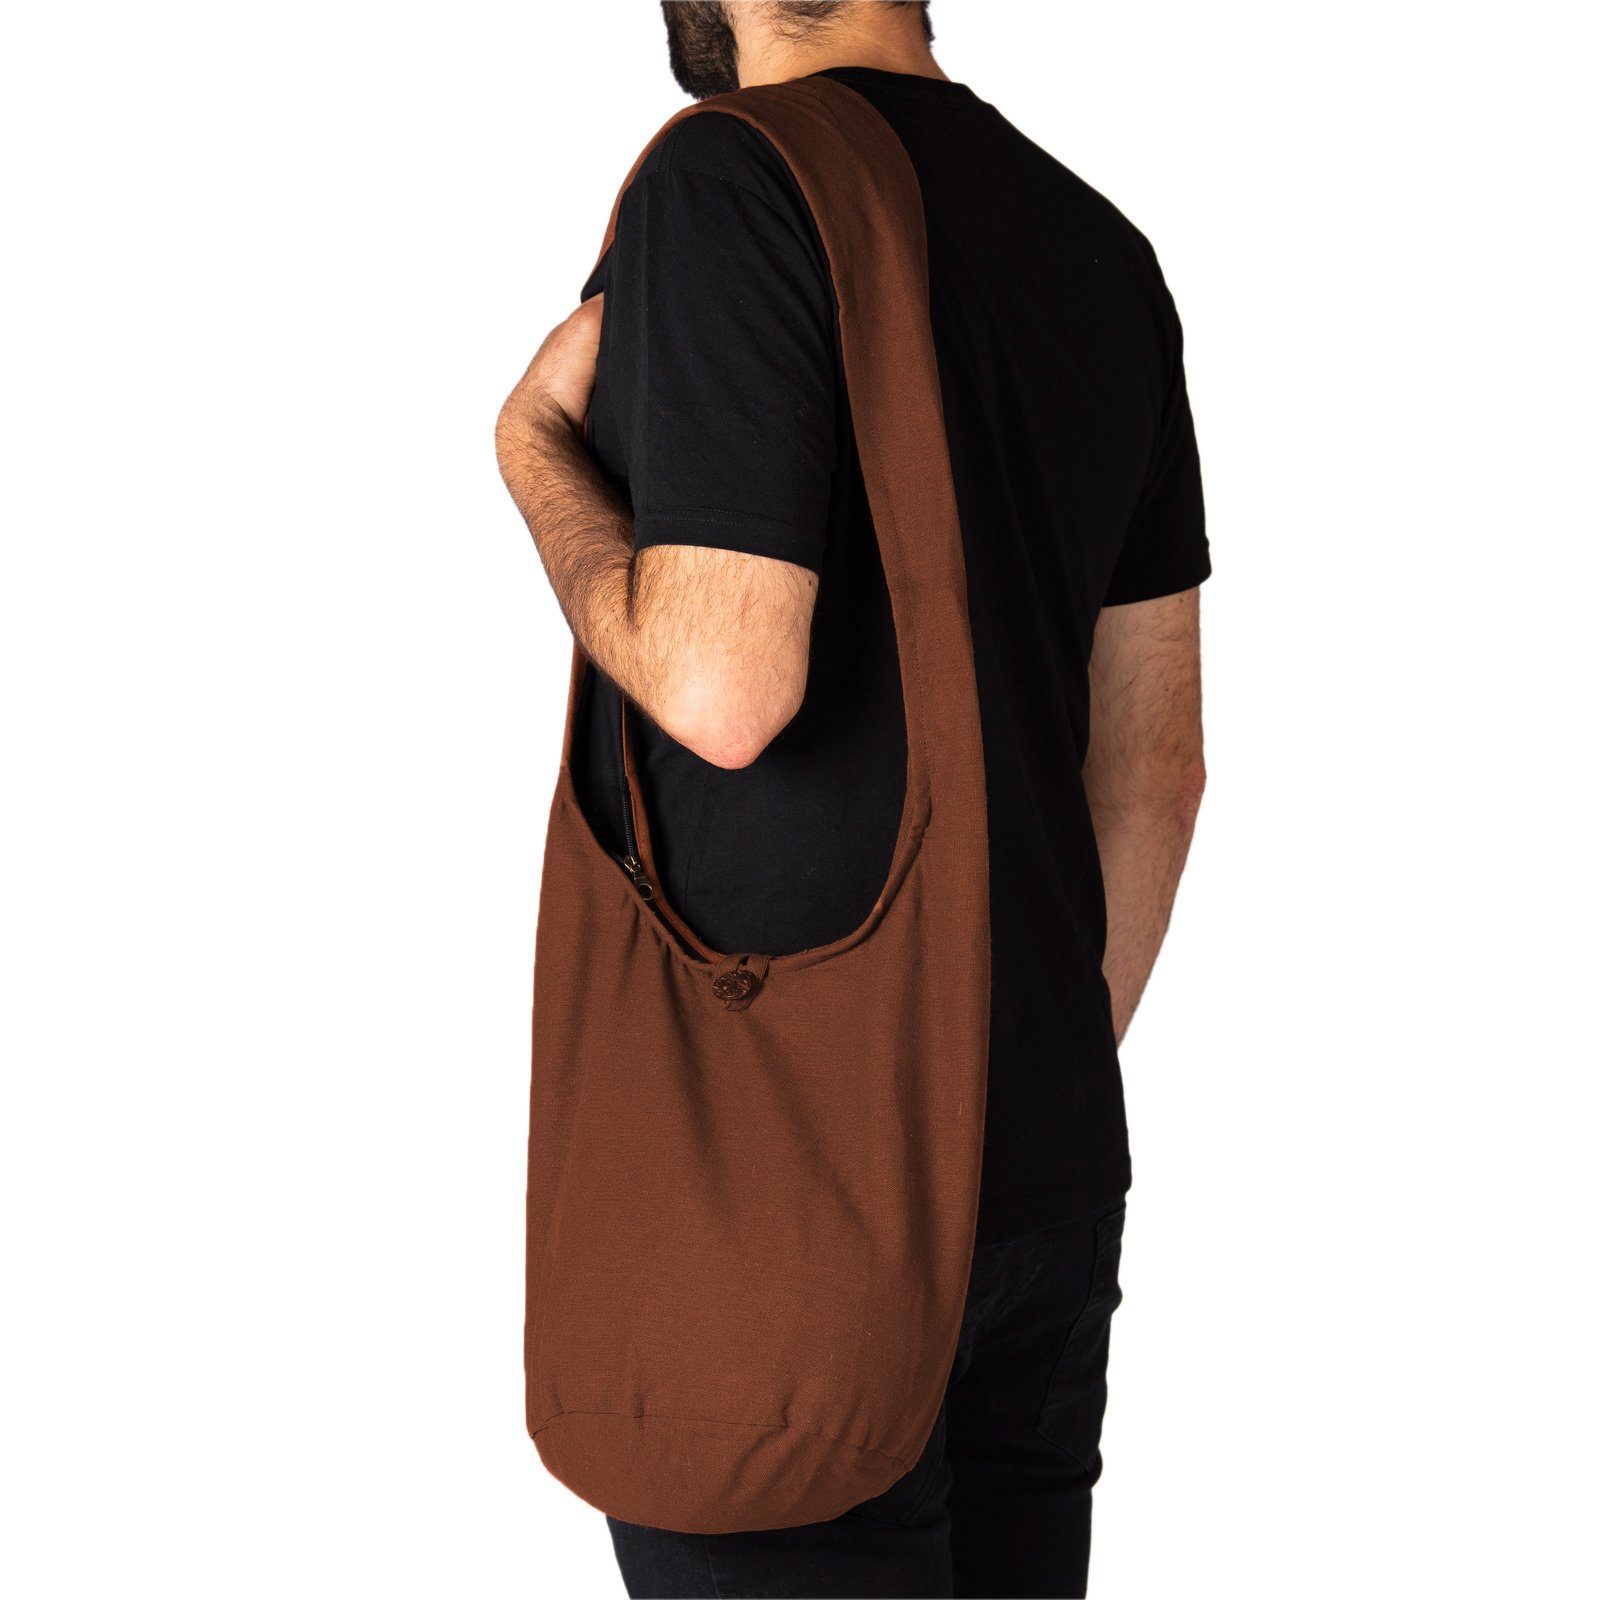 PANASIAM Beuteltasche Schulterbeutel einfarbig aus Baumwolle oder auch 100% Strandtasche Wickeltasche Braun Größen, Umhängetasche Handtasche als Schultertasche 2 in